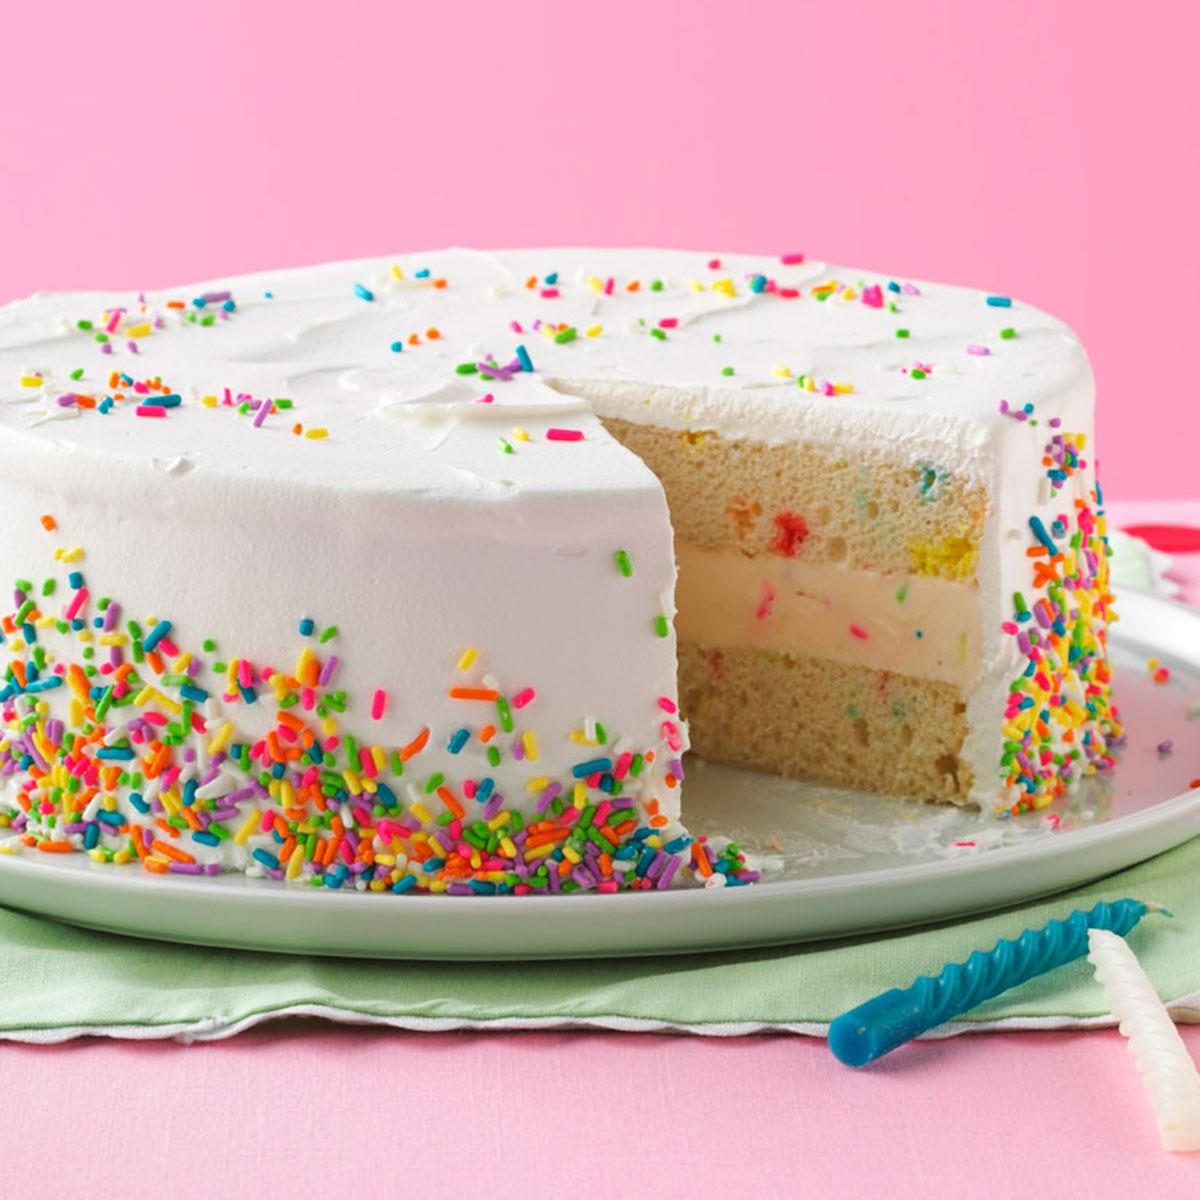 Classic Vanilla Cake Recipe | How to Make Birthday Cake - YouTube